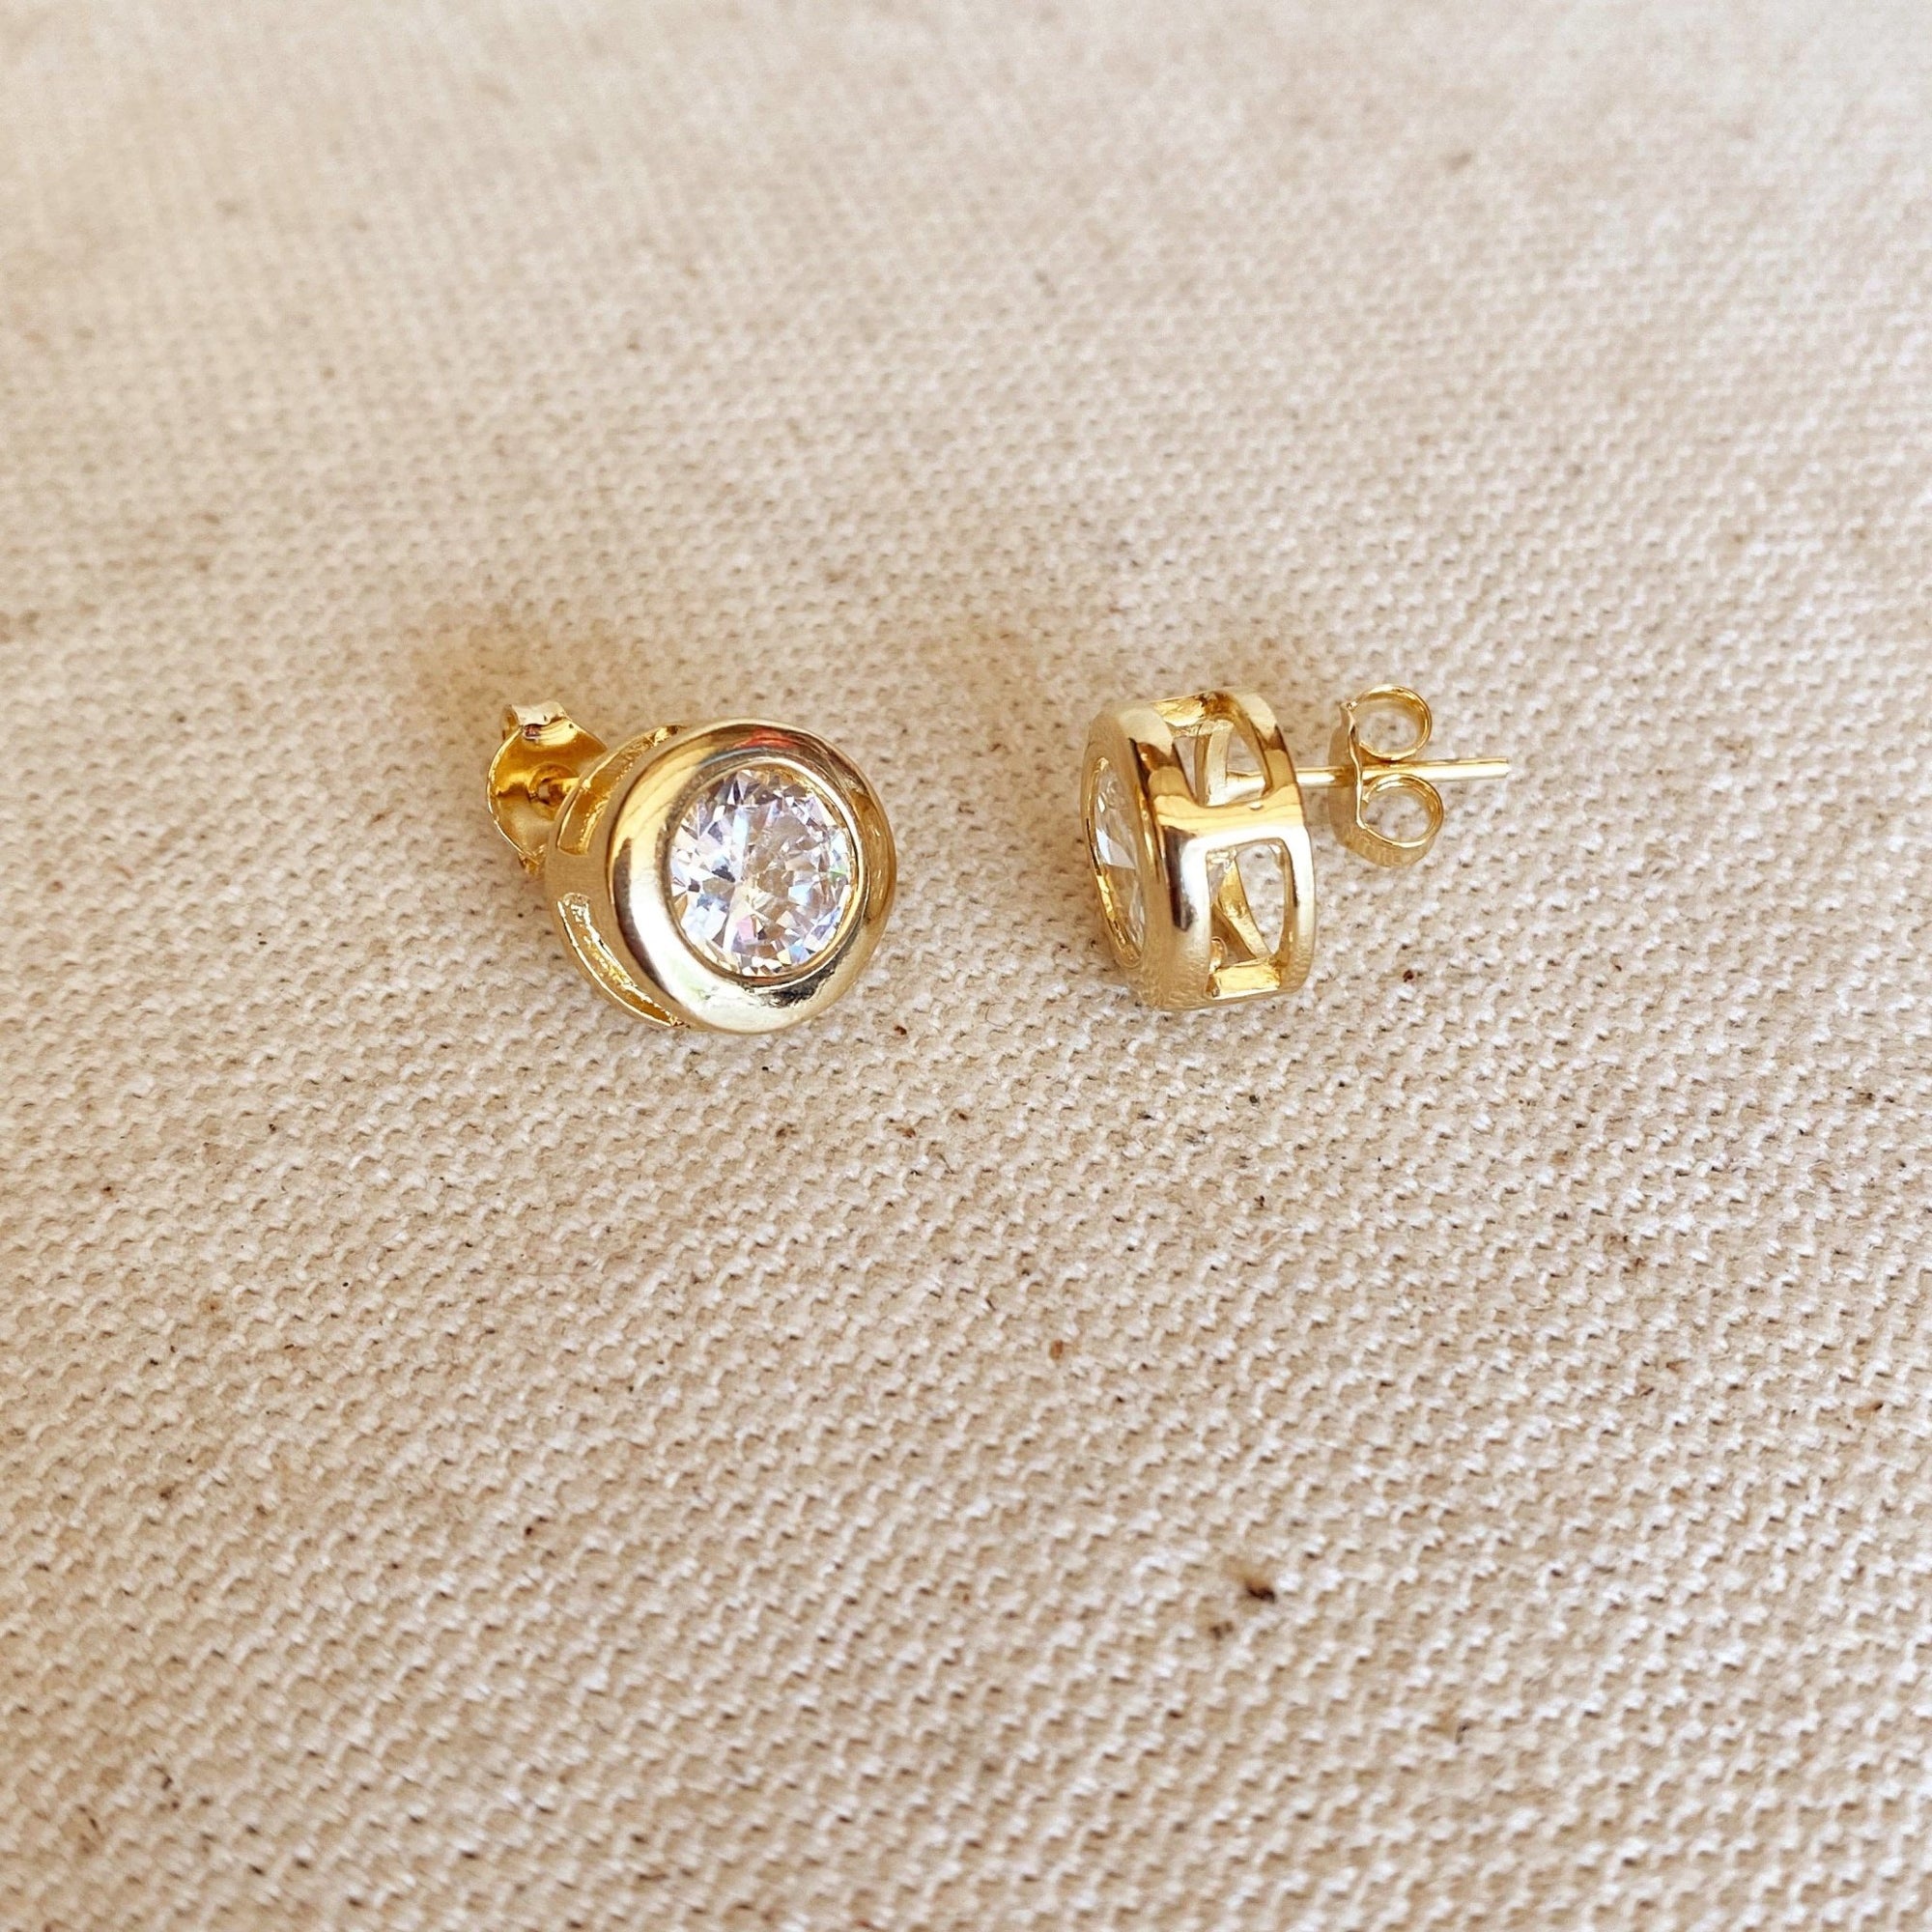 10mm Bezeled Cubic Zirconia Stone Stud Earrings, 18k Gold Filled - Abigail Fox Designs